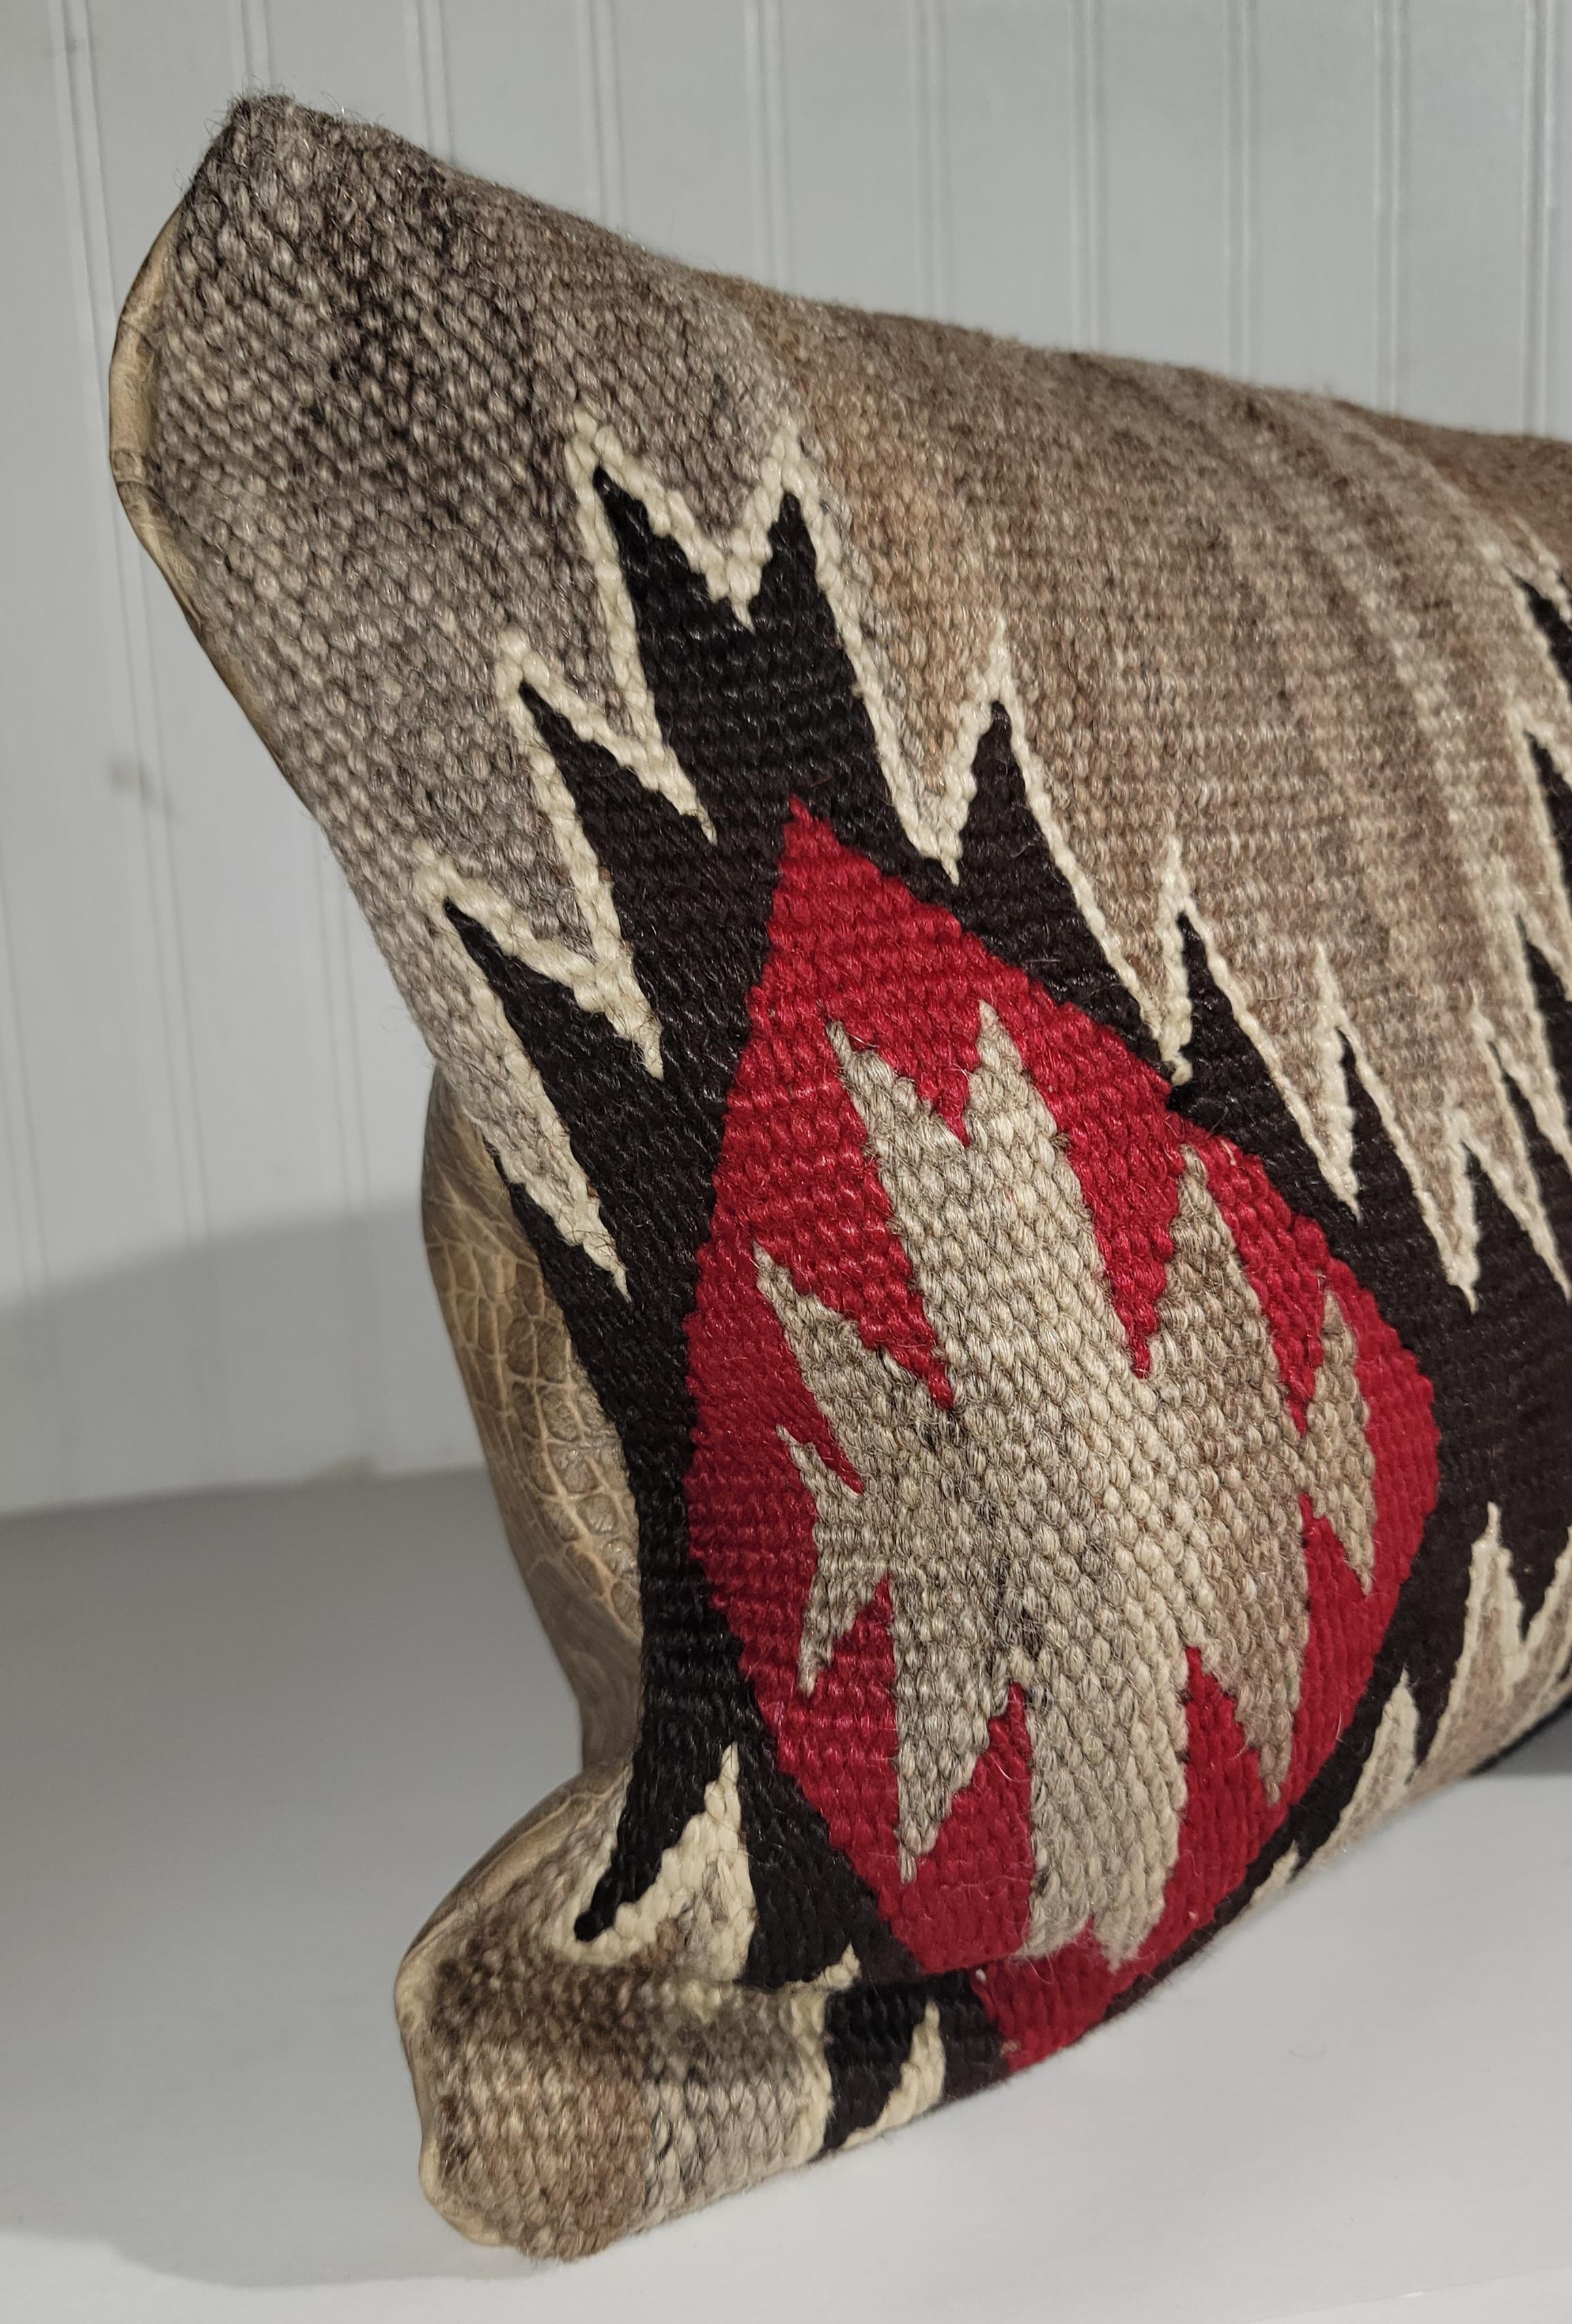 Tissage en laine Navajo transformé en oreiller avec un support en cuir de crocodile. Les inserts sont remplis de duvet et de plumes pour plus de confort et sont hypoallergéniques. 

Le plus grand oreiller mesure
27 x 10 
moyen - 26 x12 
petit - 19,5